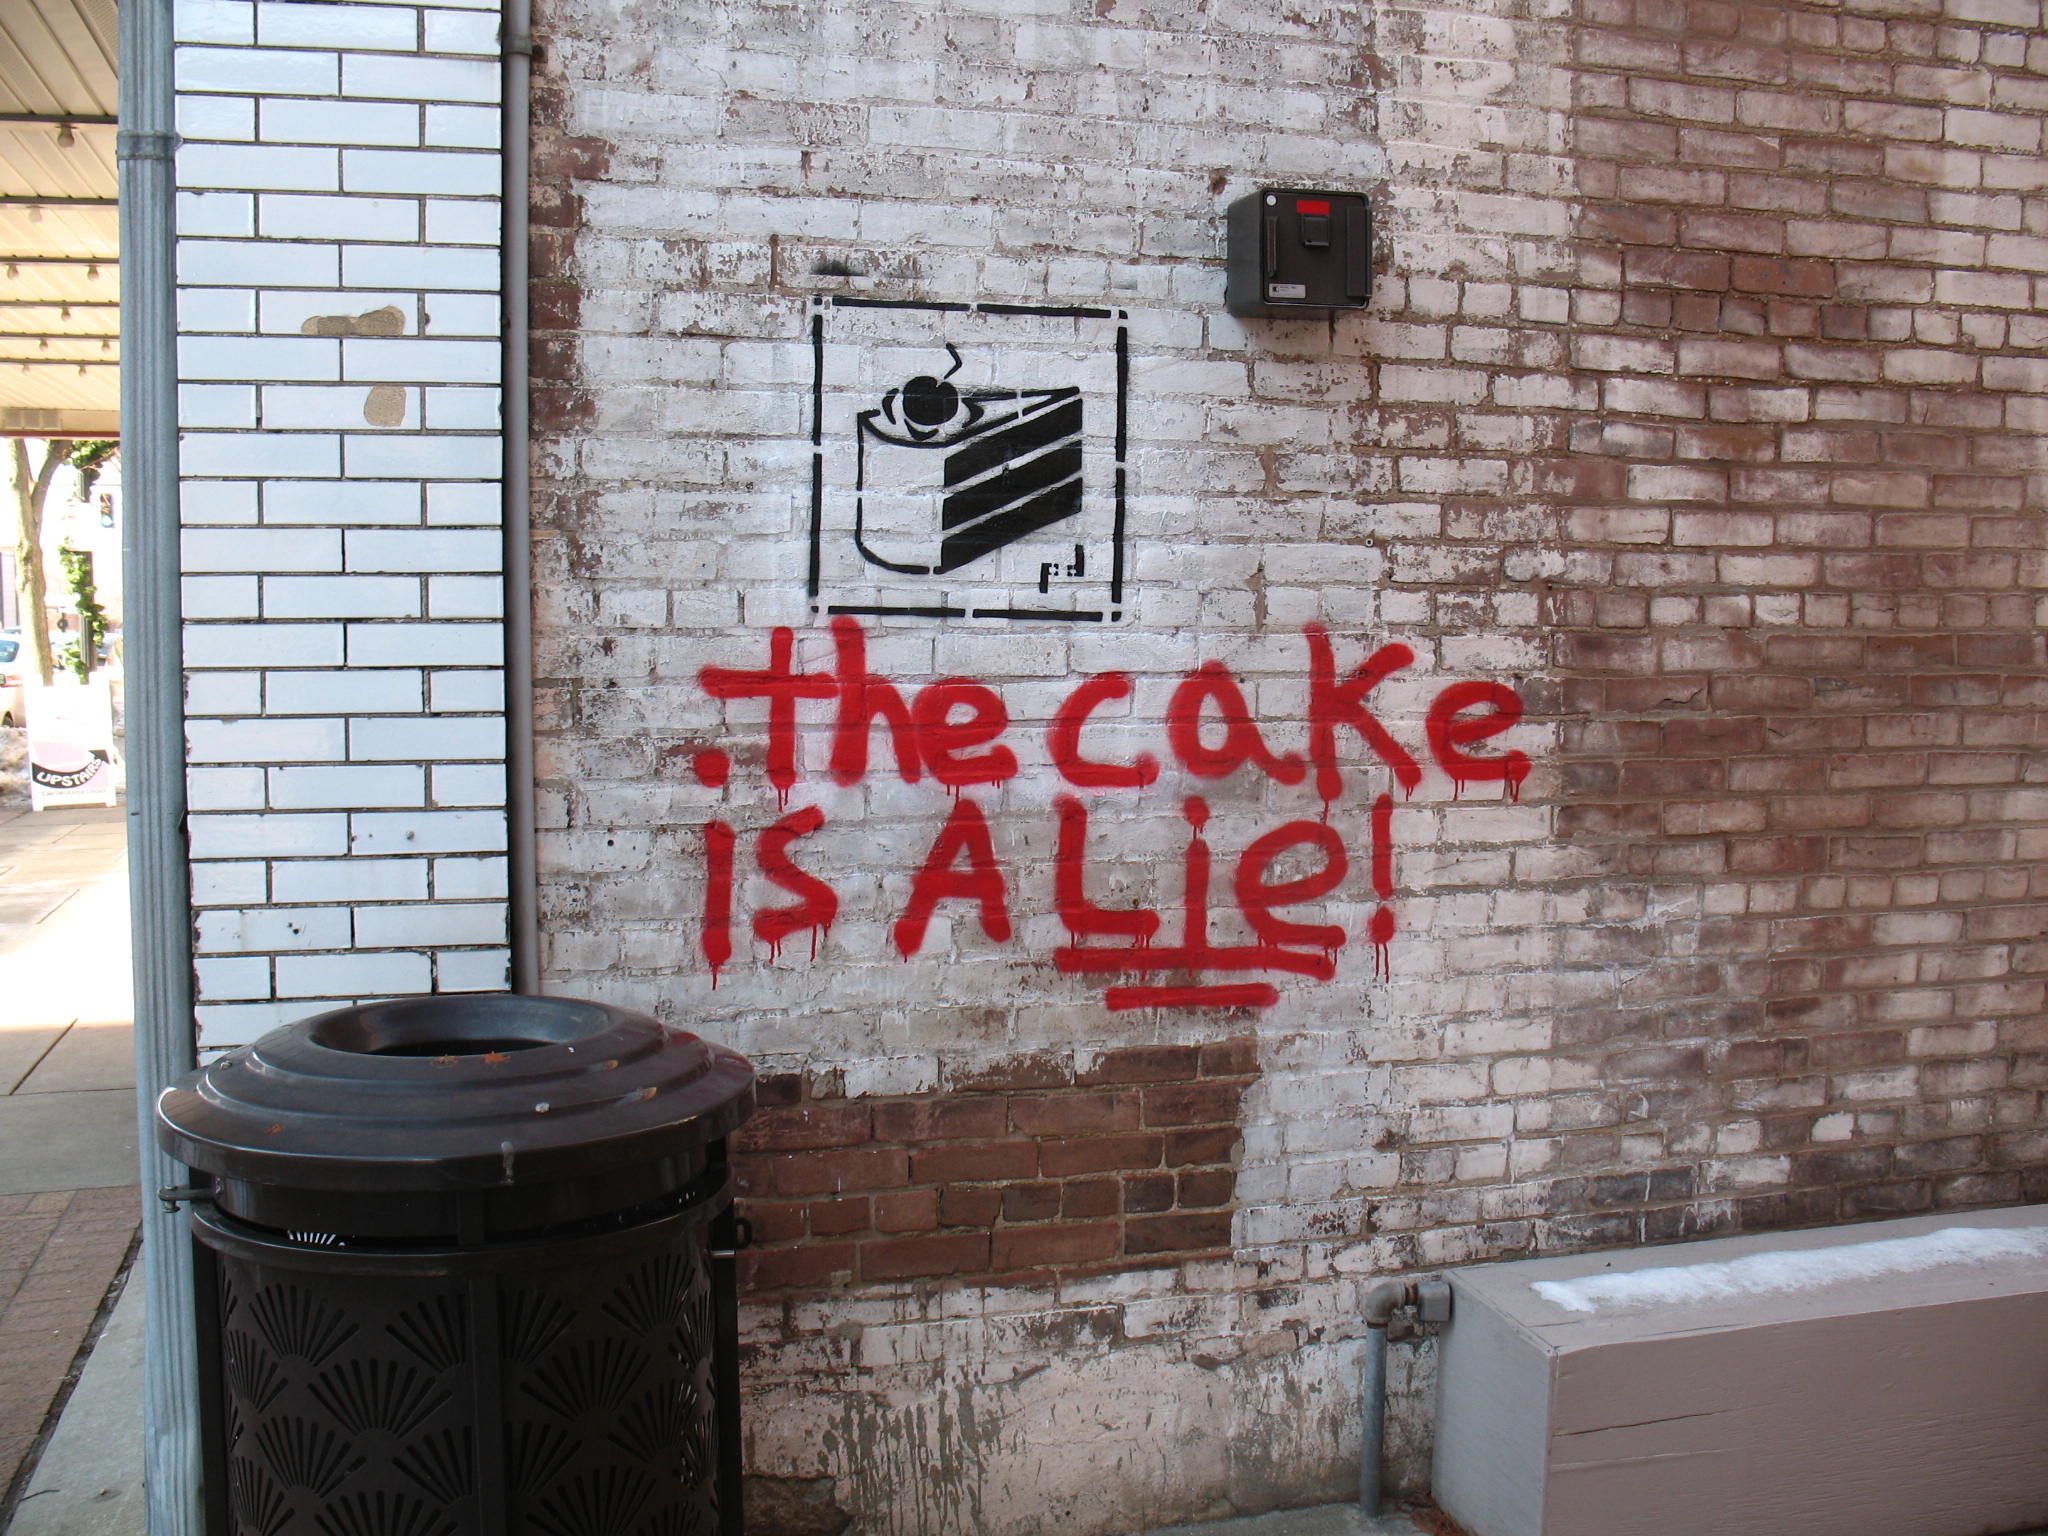 遊戲一刻丨《傳送門》「蛋糕是個謊言」